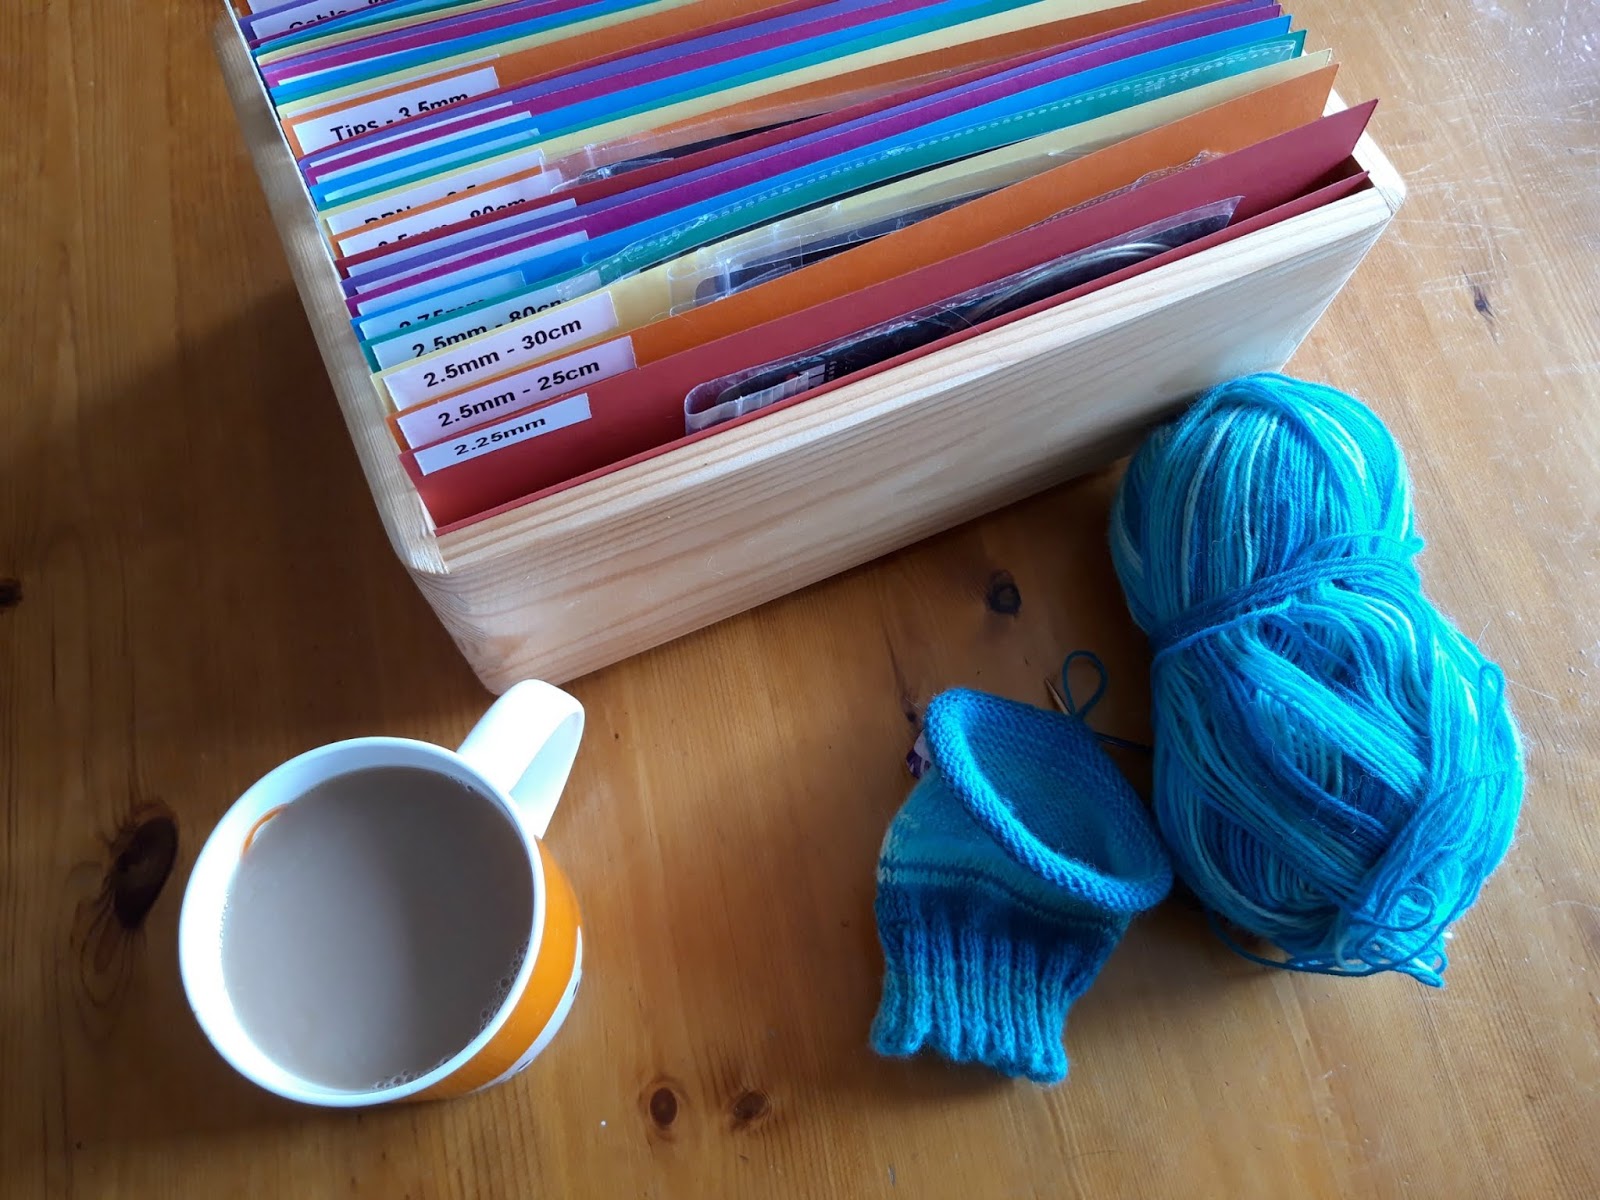 Circular needle storage that works! : r/knitting